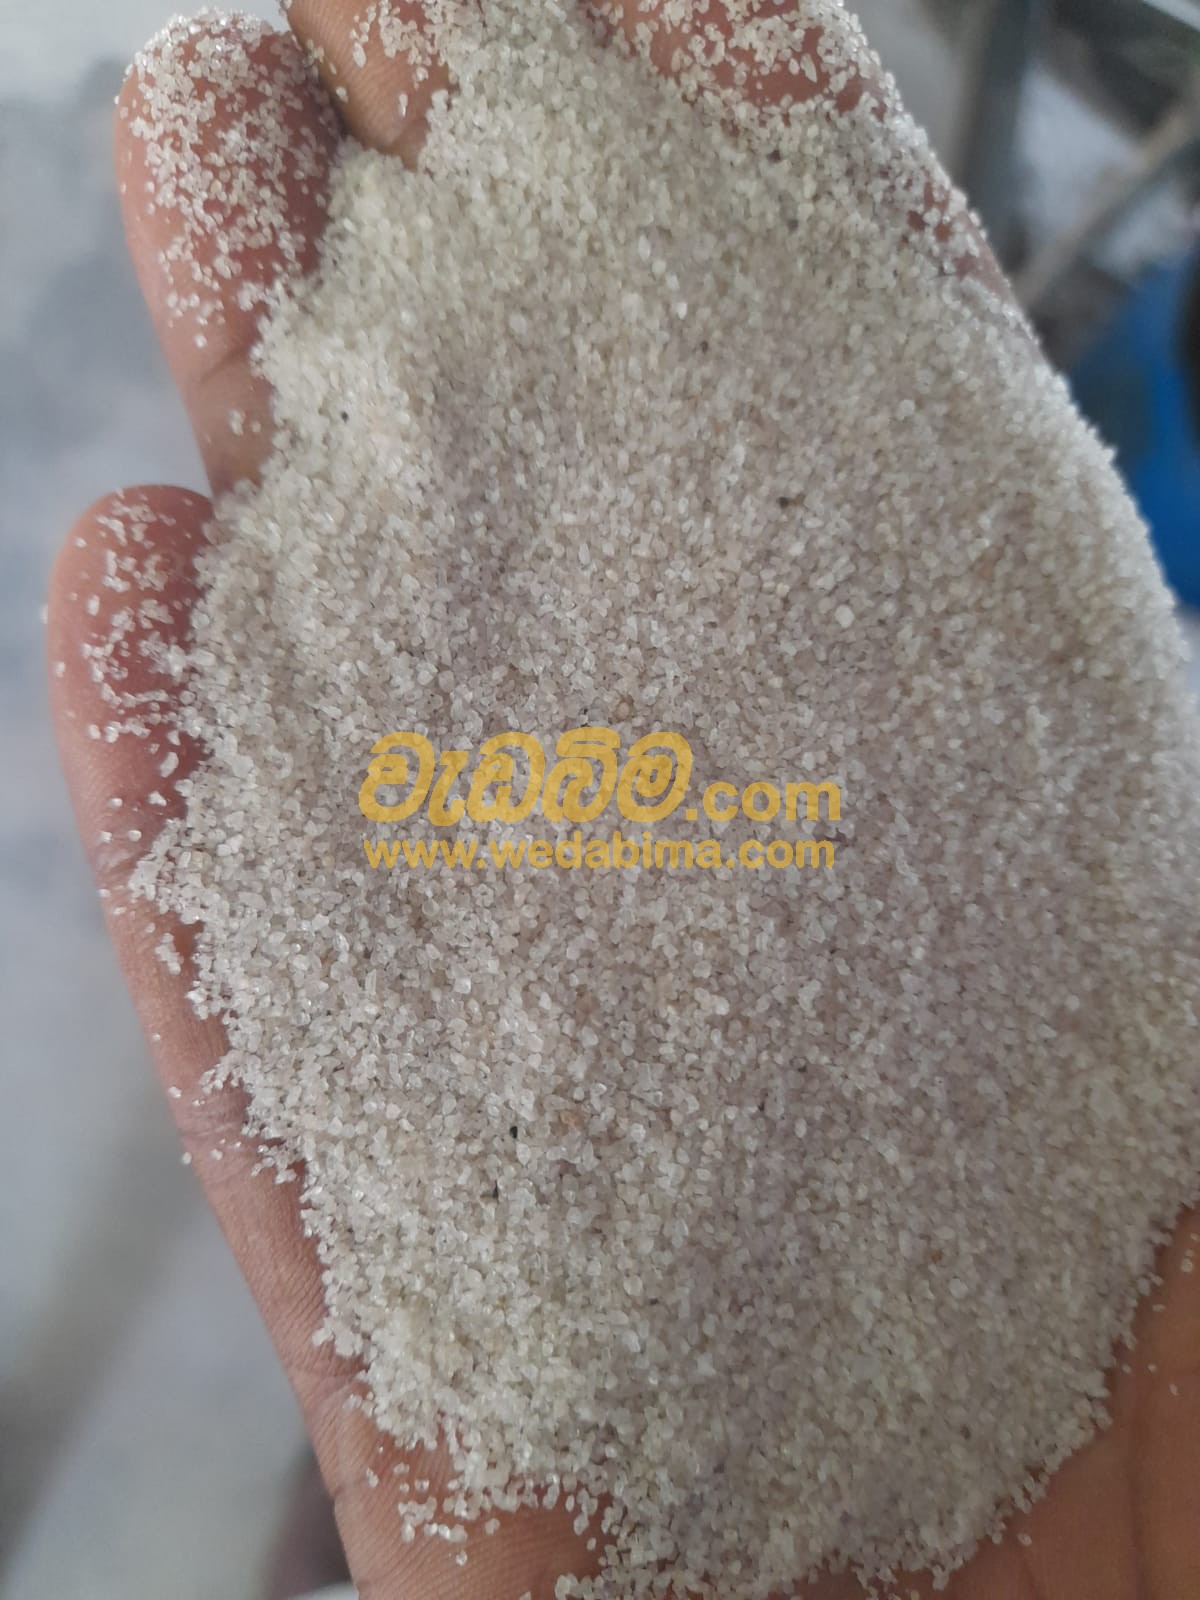 Cover image for Silica Sand Price in Sri Lanka